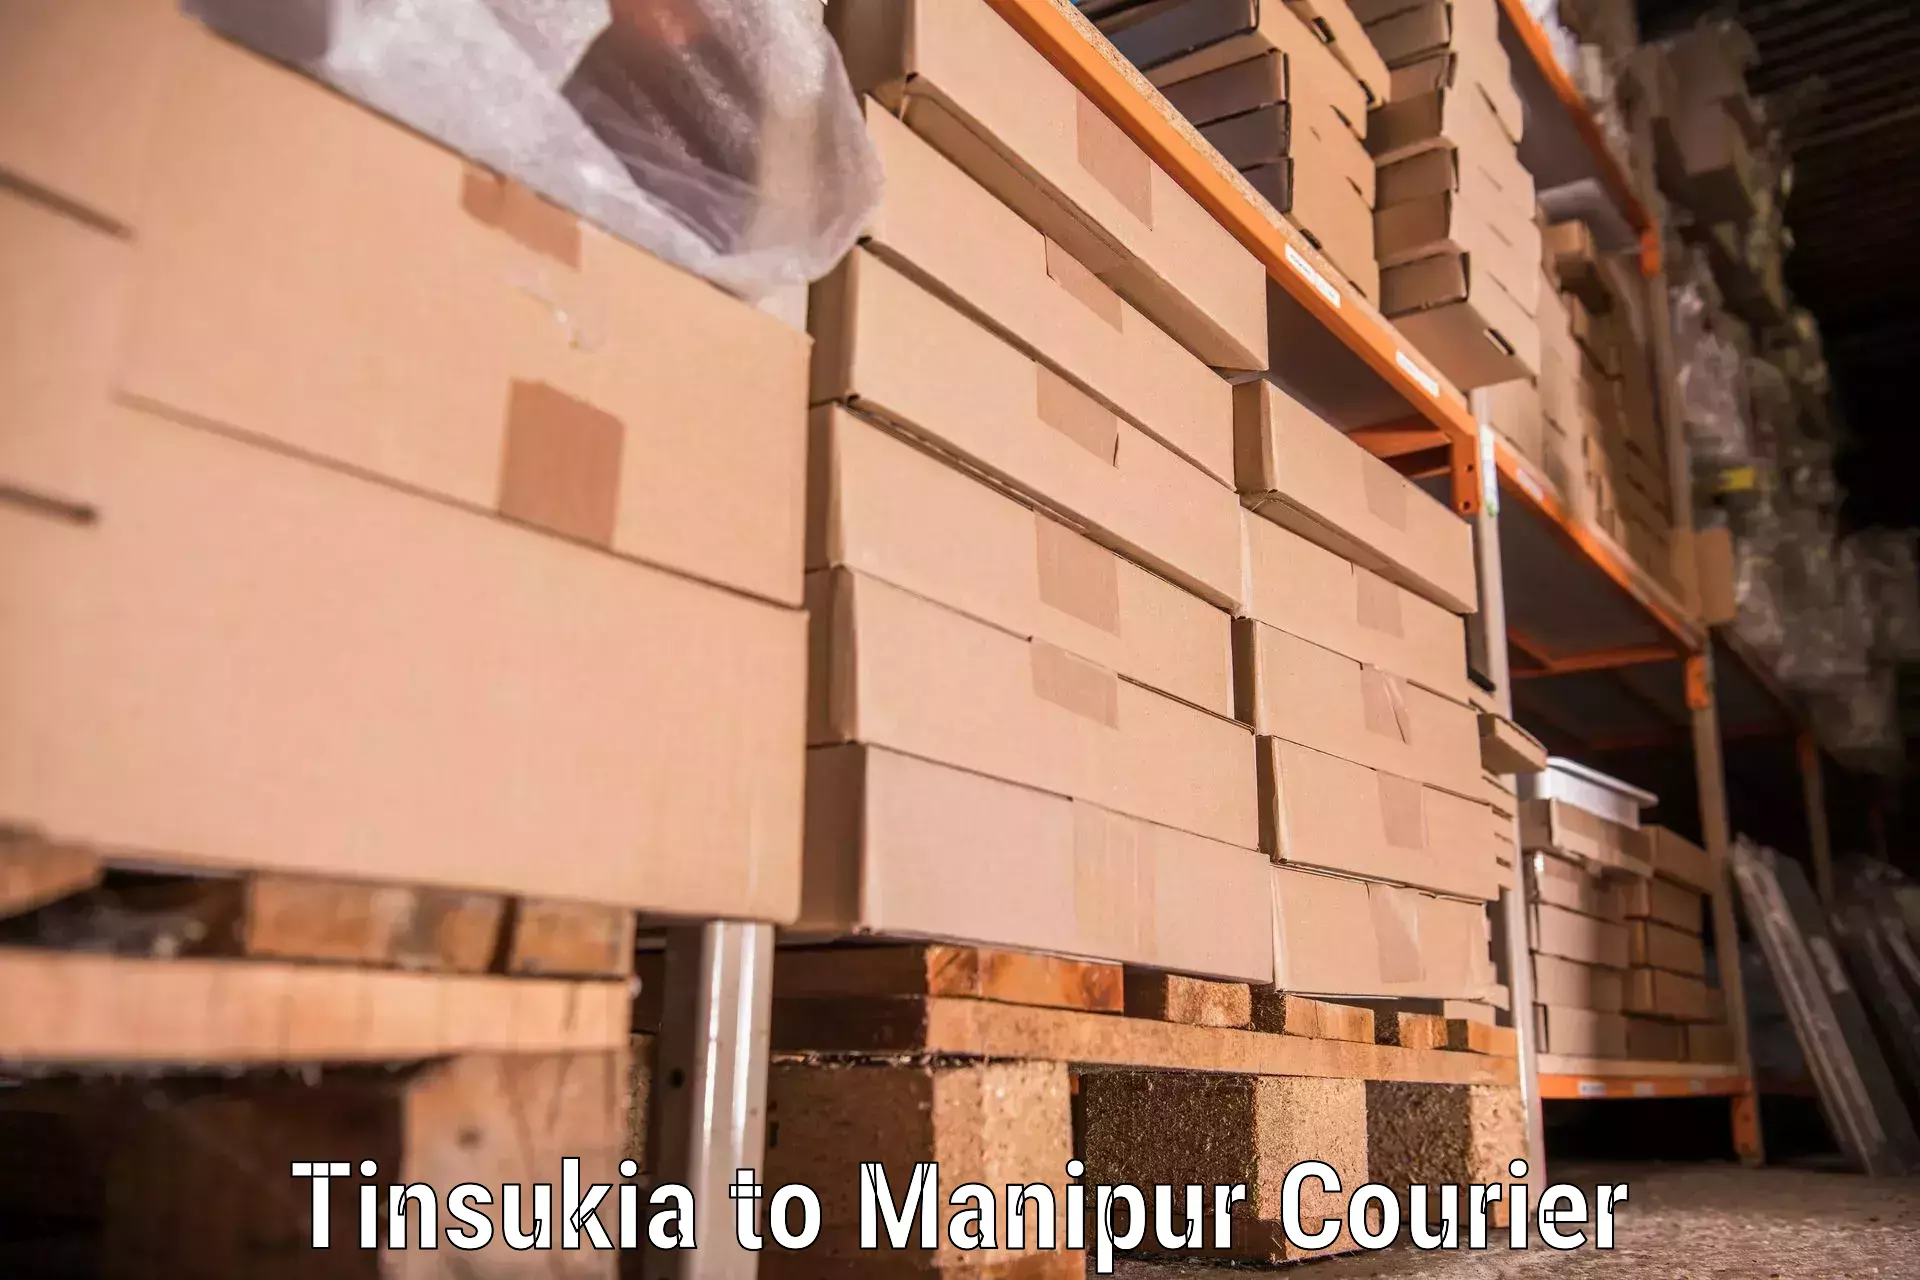 Household moving companies Tinsukia to Thoubal